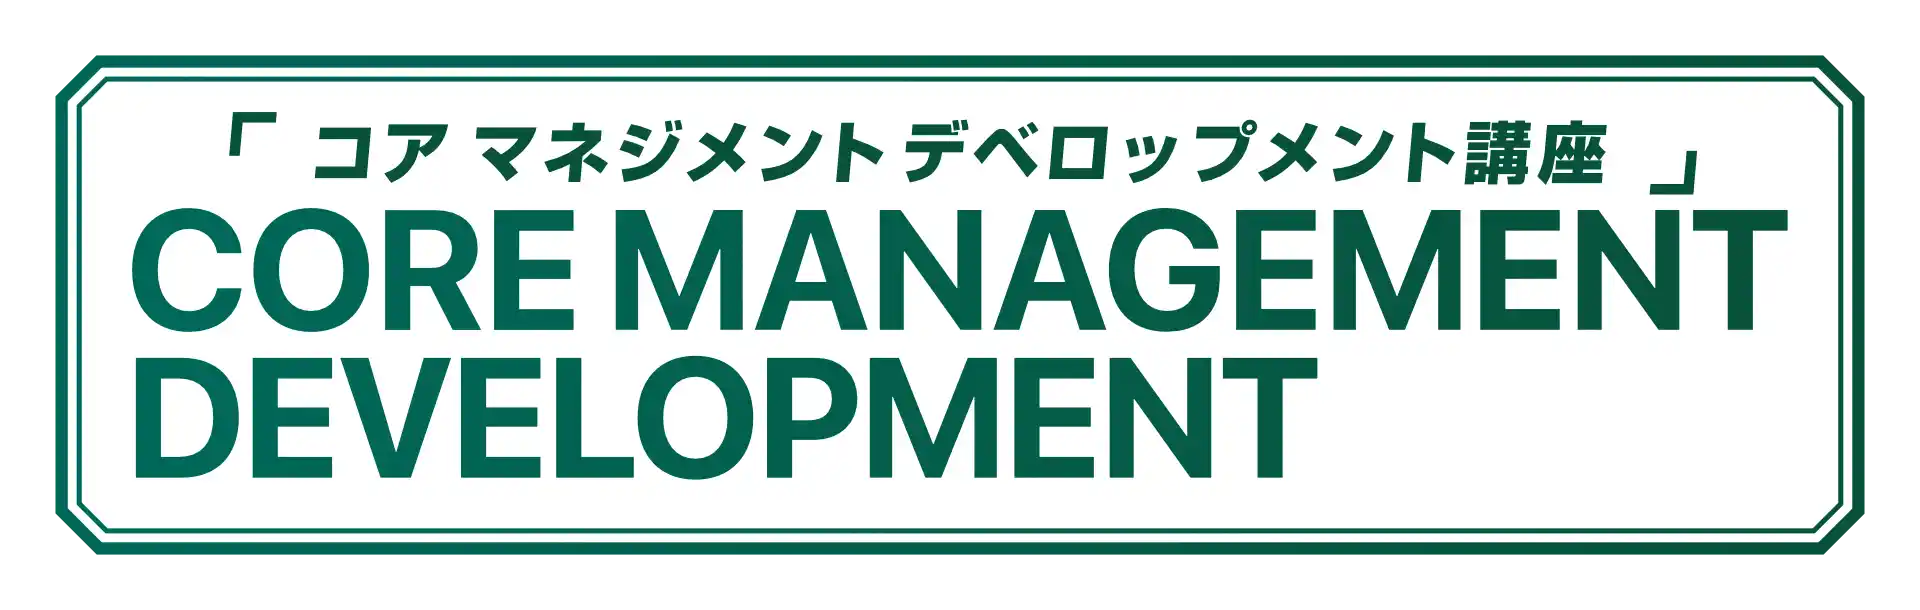 CORE MANAGEMENT DEVELOPMENT (コア マネジメント デベロップメント講座)